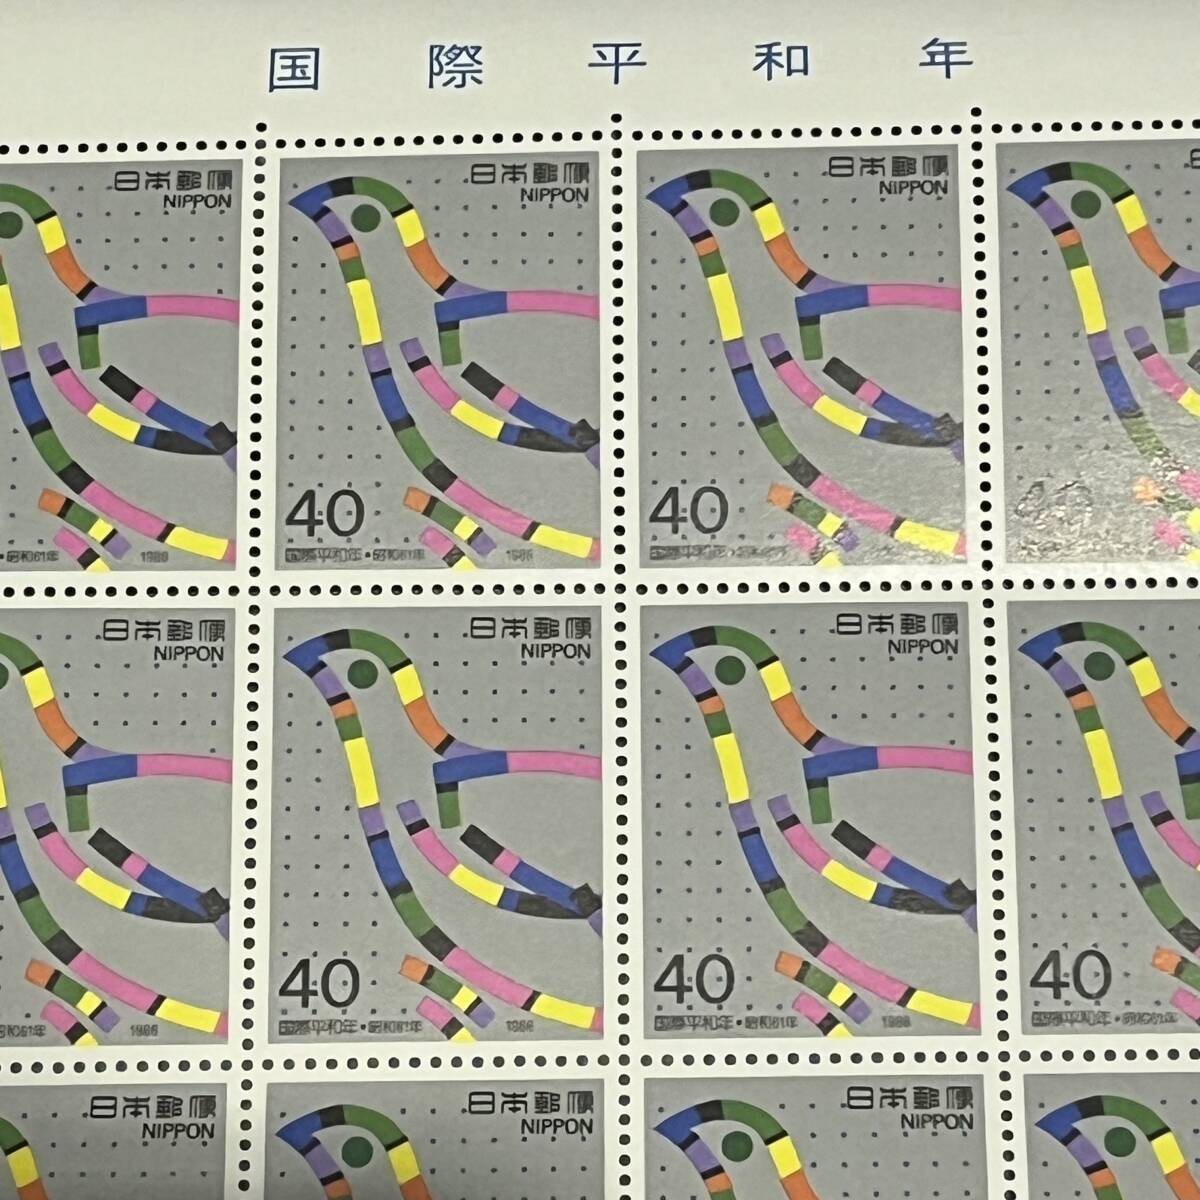 【未使用品】記念切手シート 世界デザイン博覧会記念/郵便切手デザインなど 額面 13520円の画像6